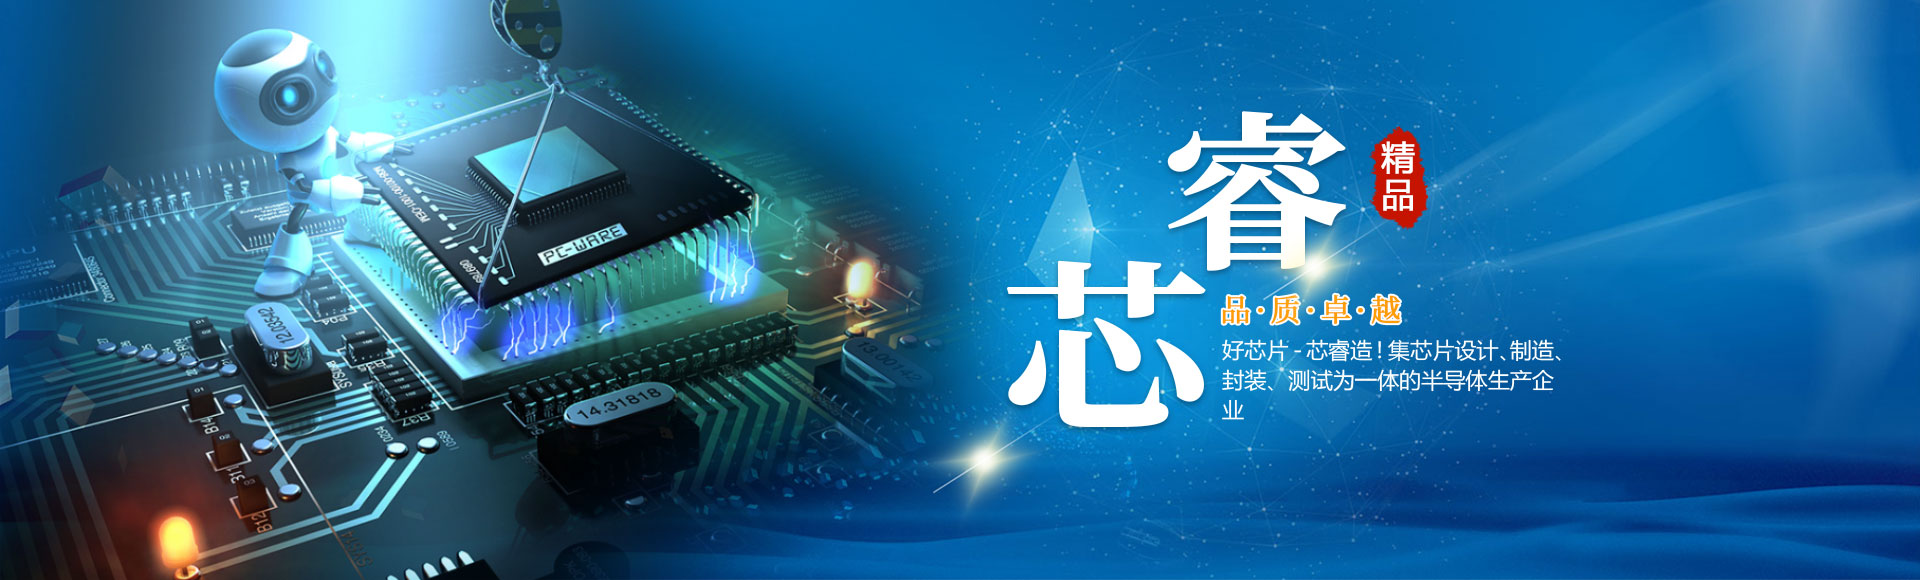 河南芯睿电子科技-澳门·太阳集团2020网站有限公司